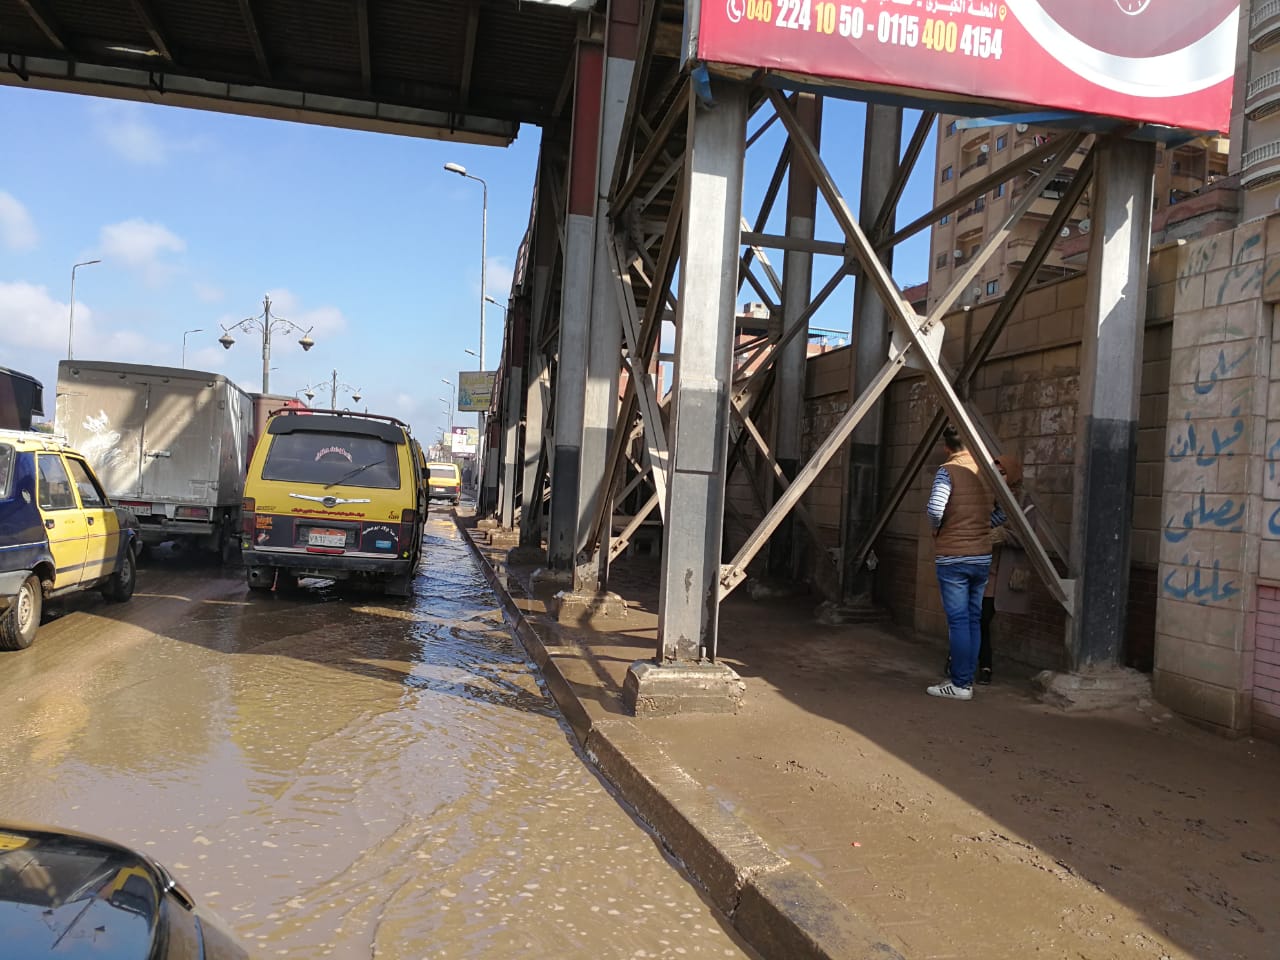 تجمع مياه الأمطار أسفل الكبارى وبشوارع الغربية (7)